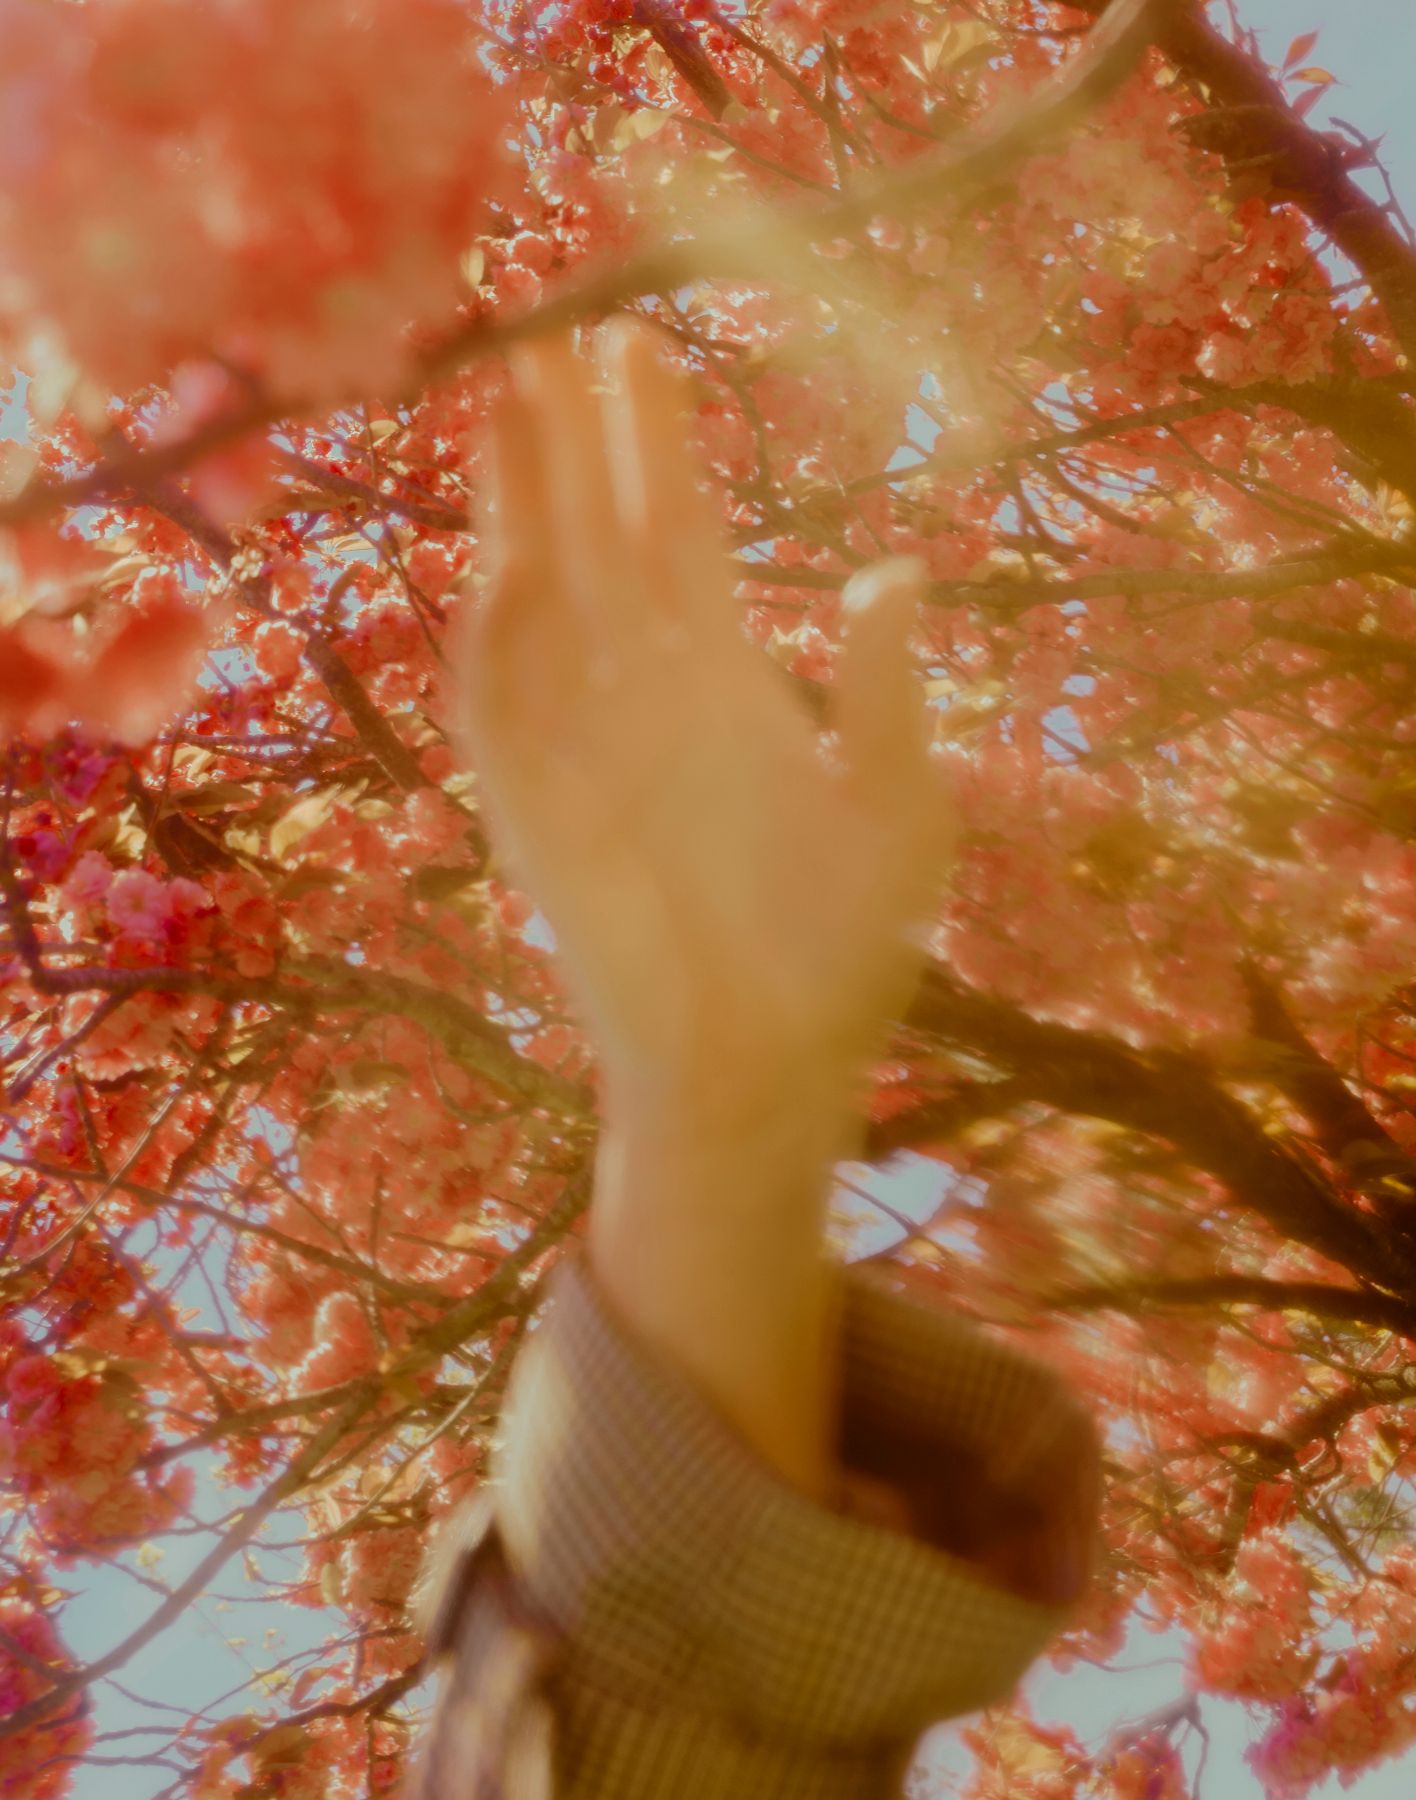 Foto, hvor en hånd omgivet af et træs blomsterflor griber efter en af grenene.